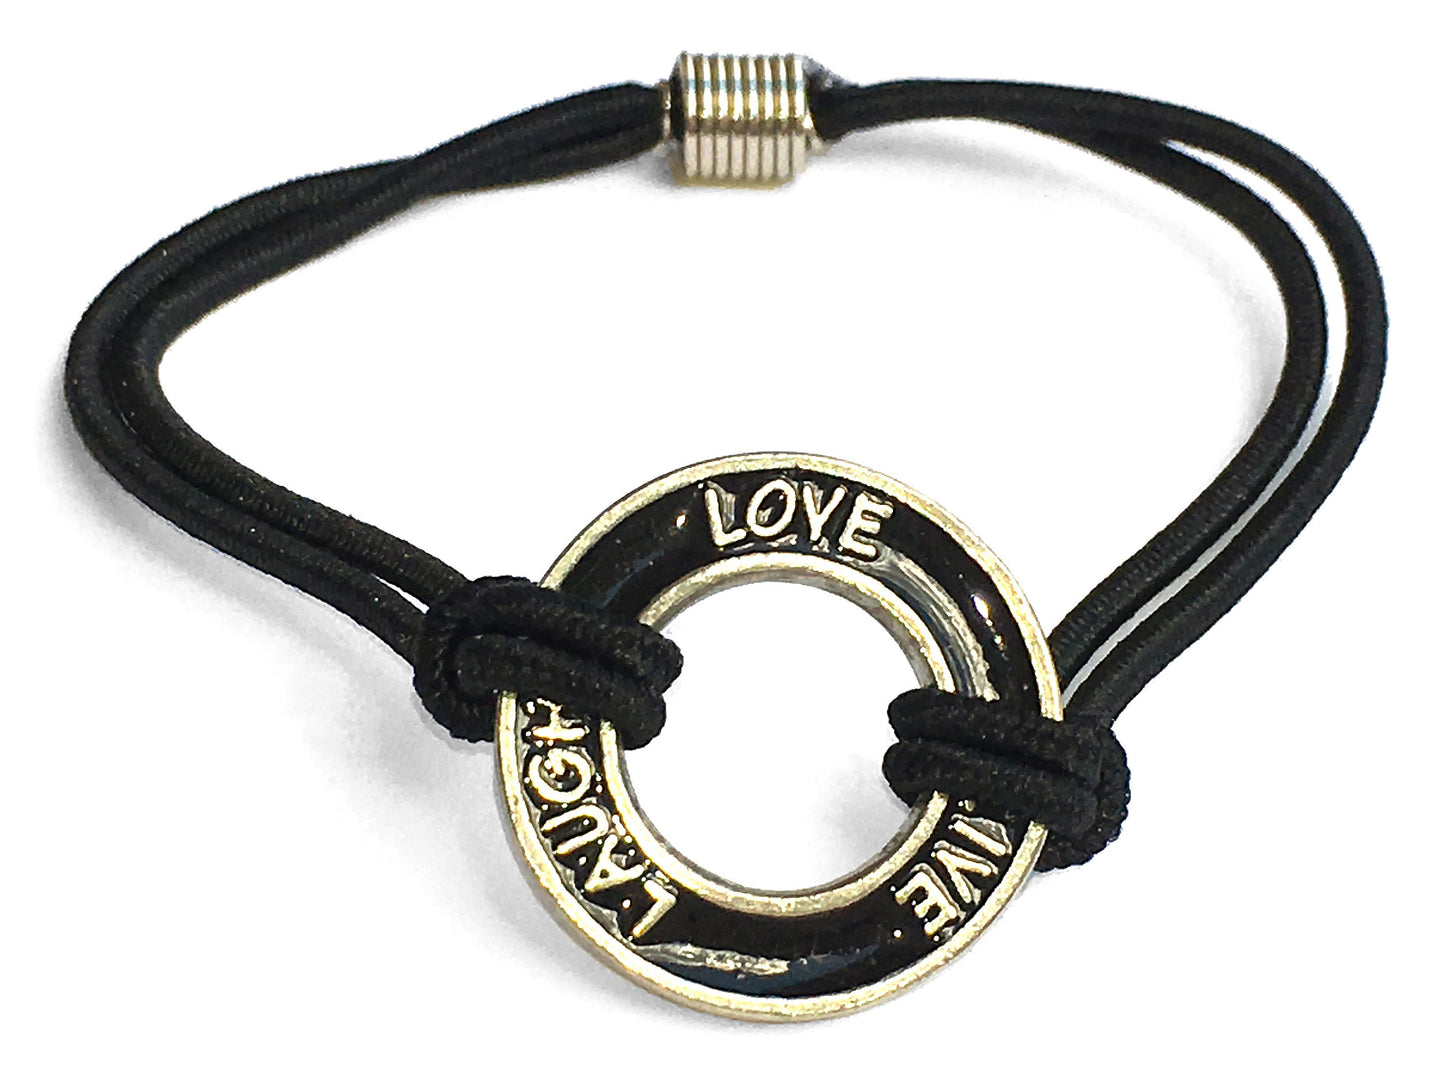 Live Laugh Love® Loop Bungee Bracelet - Black